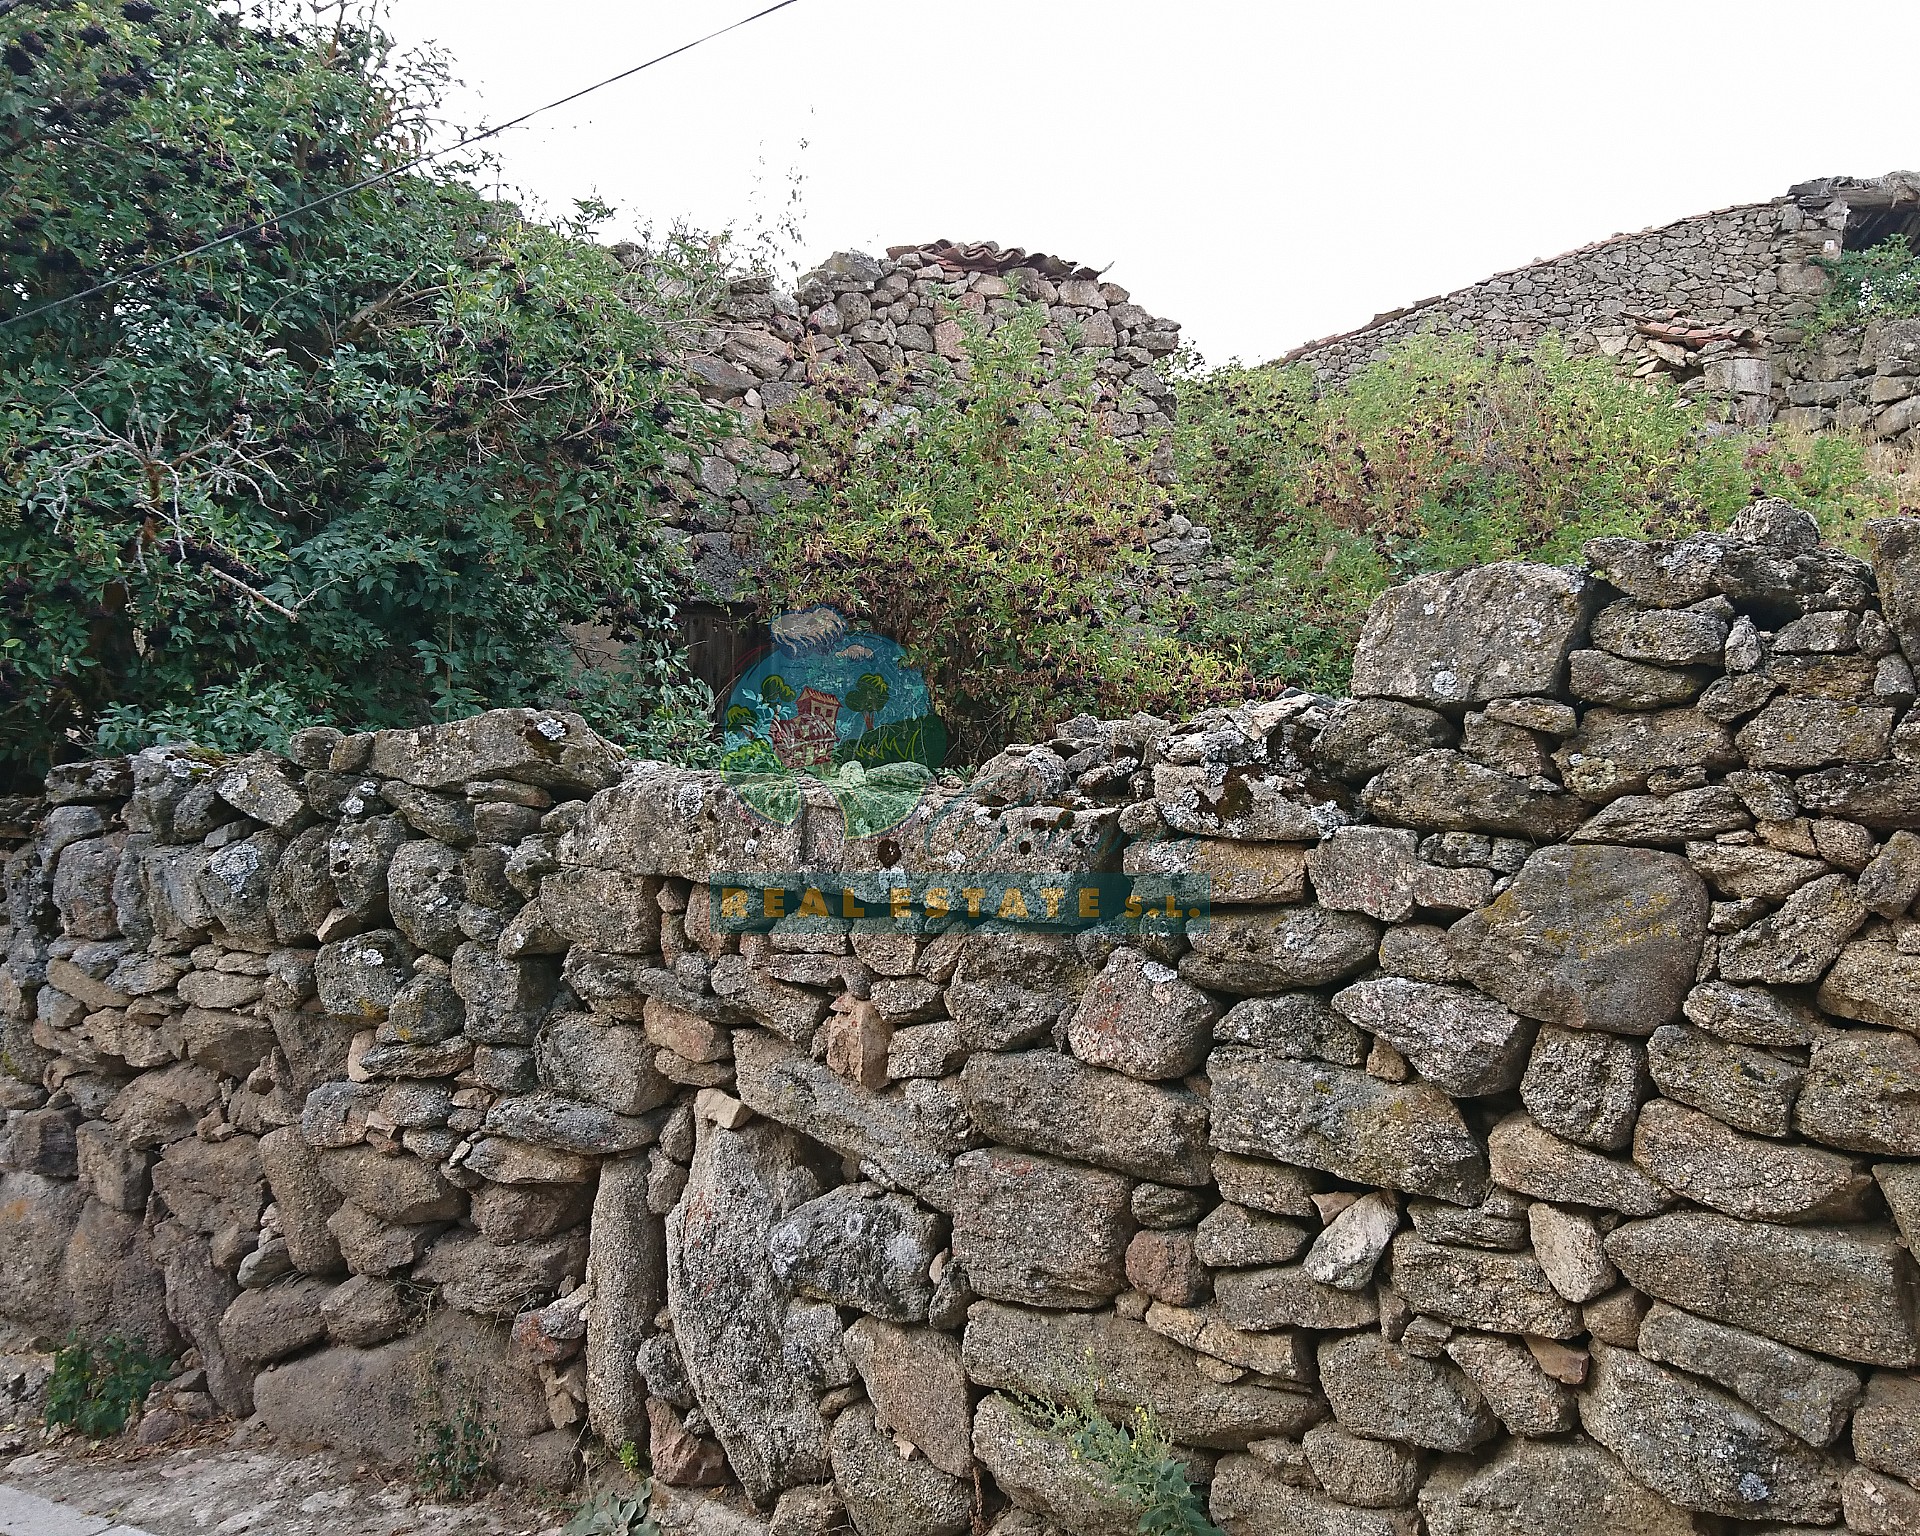 Cuadra en ruinas y vistas increíbles en Sierra de Gredos.